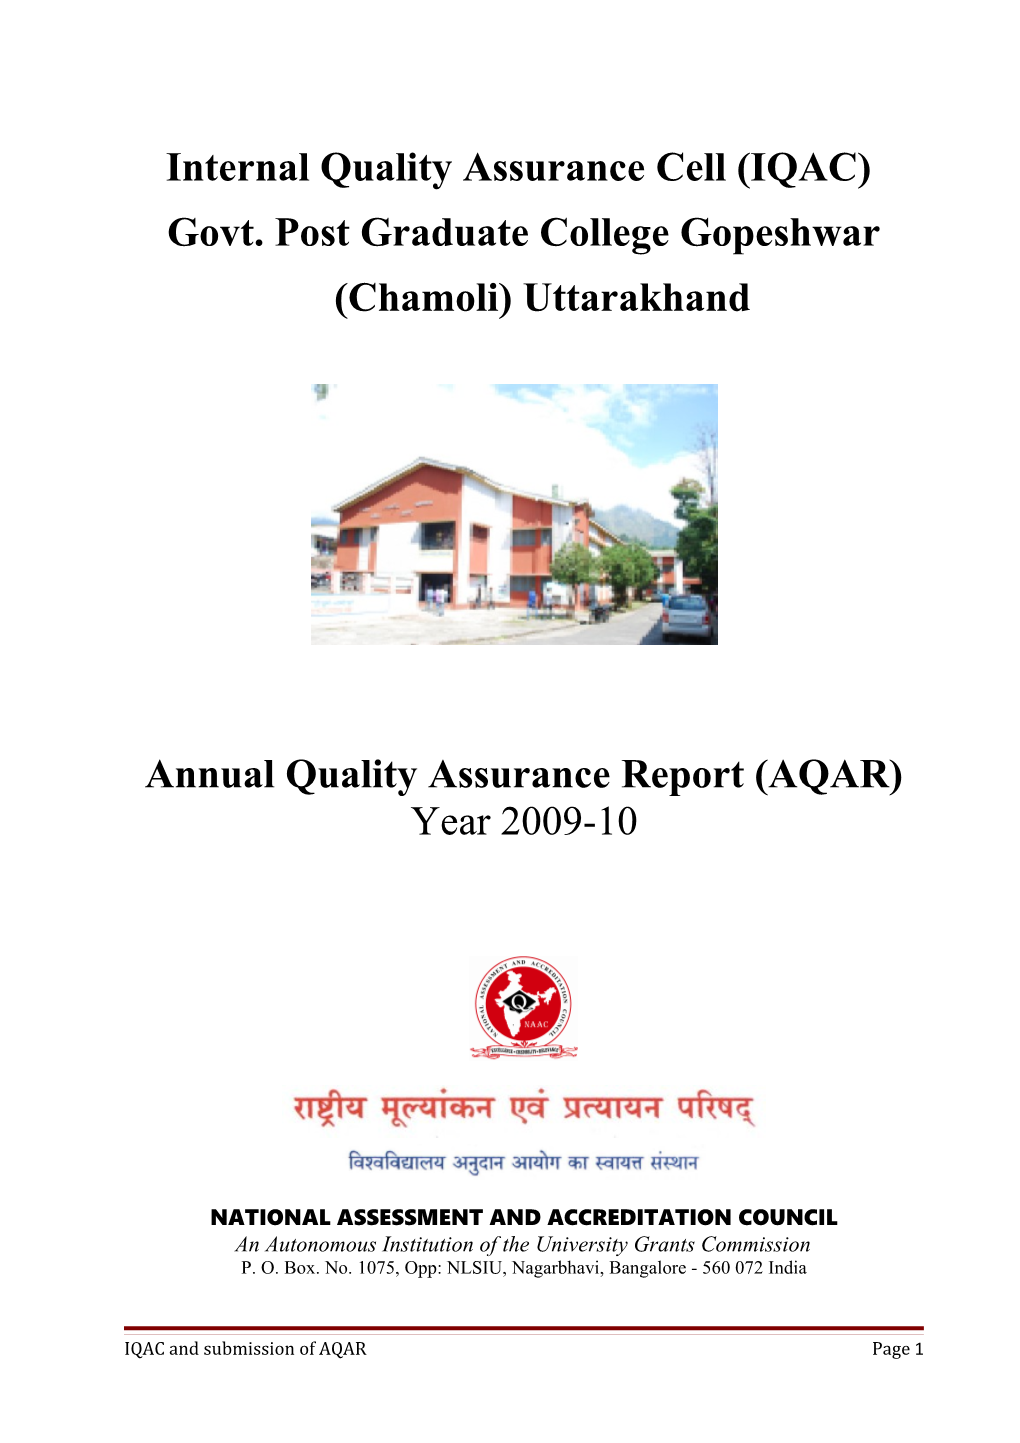 Govt. Post Graduate College Gopeshwar (Chamoli) Uttarakhand